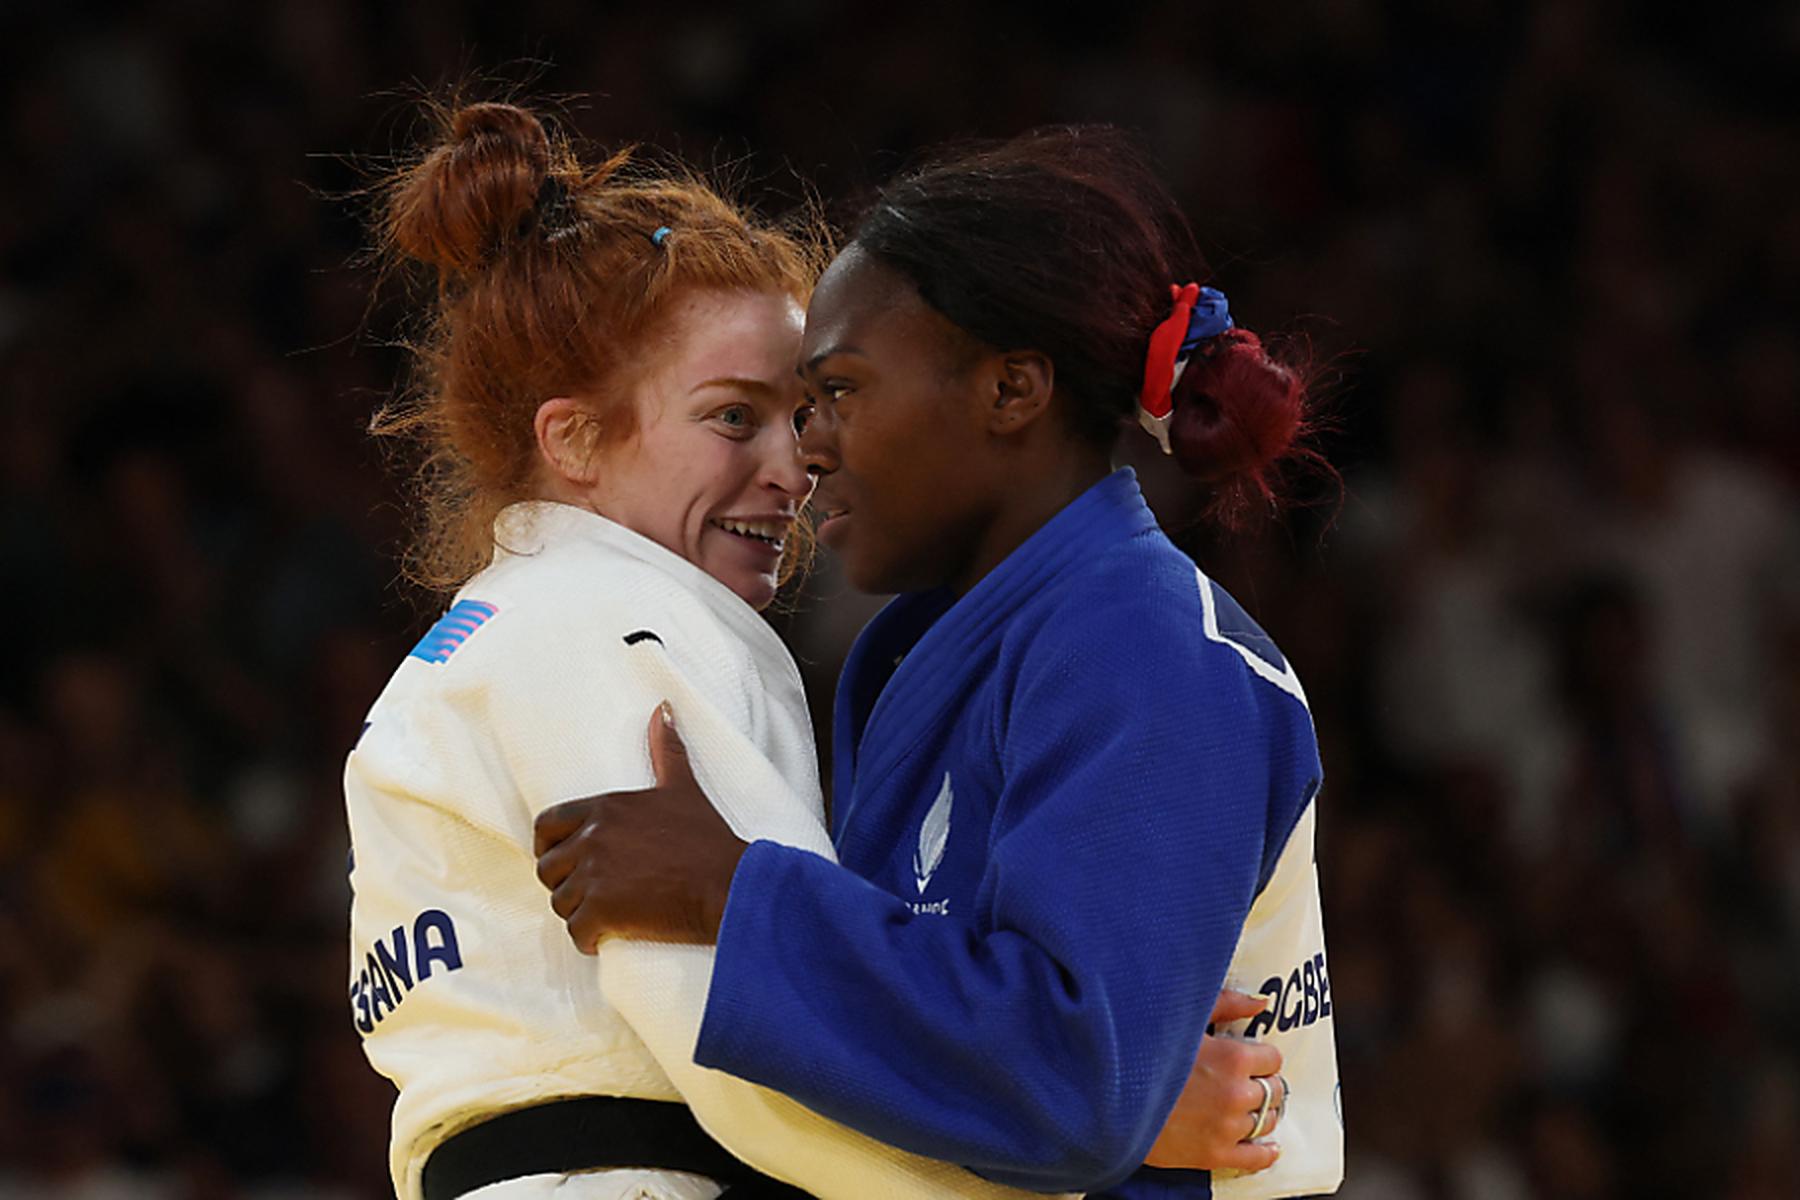 Paris: Bronzekampf verloren - Platz 5 für Judoka Piovesana in Paris